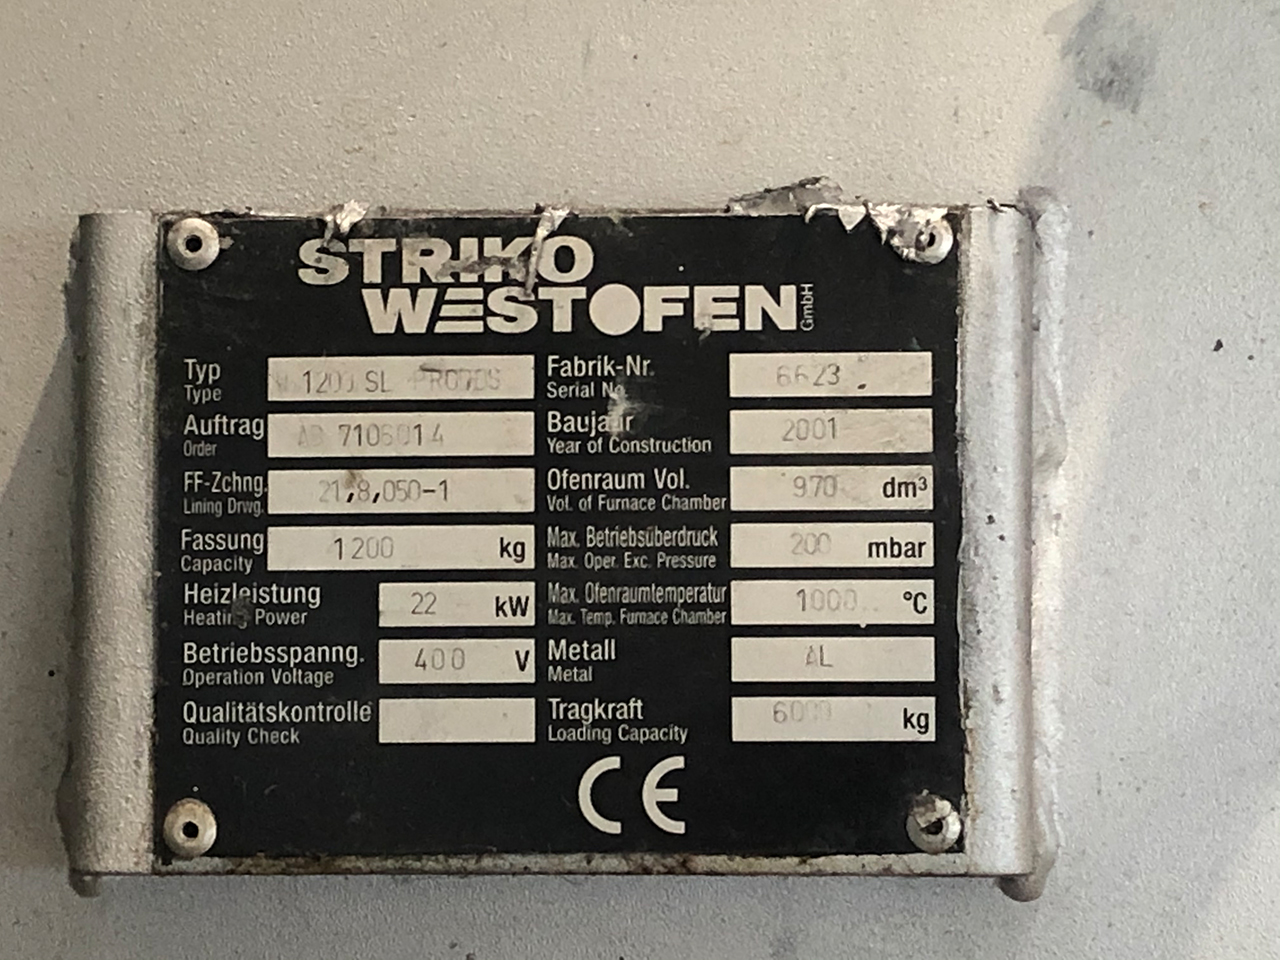 StrikoWestofen W 1200 SL ProDos DPC Piec dozujący O1814, używany